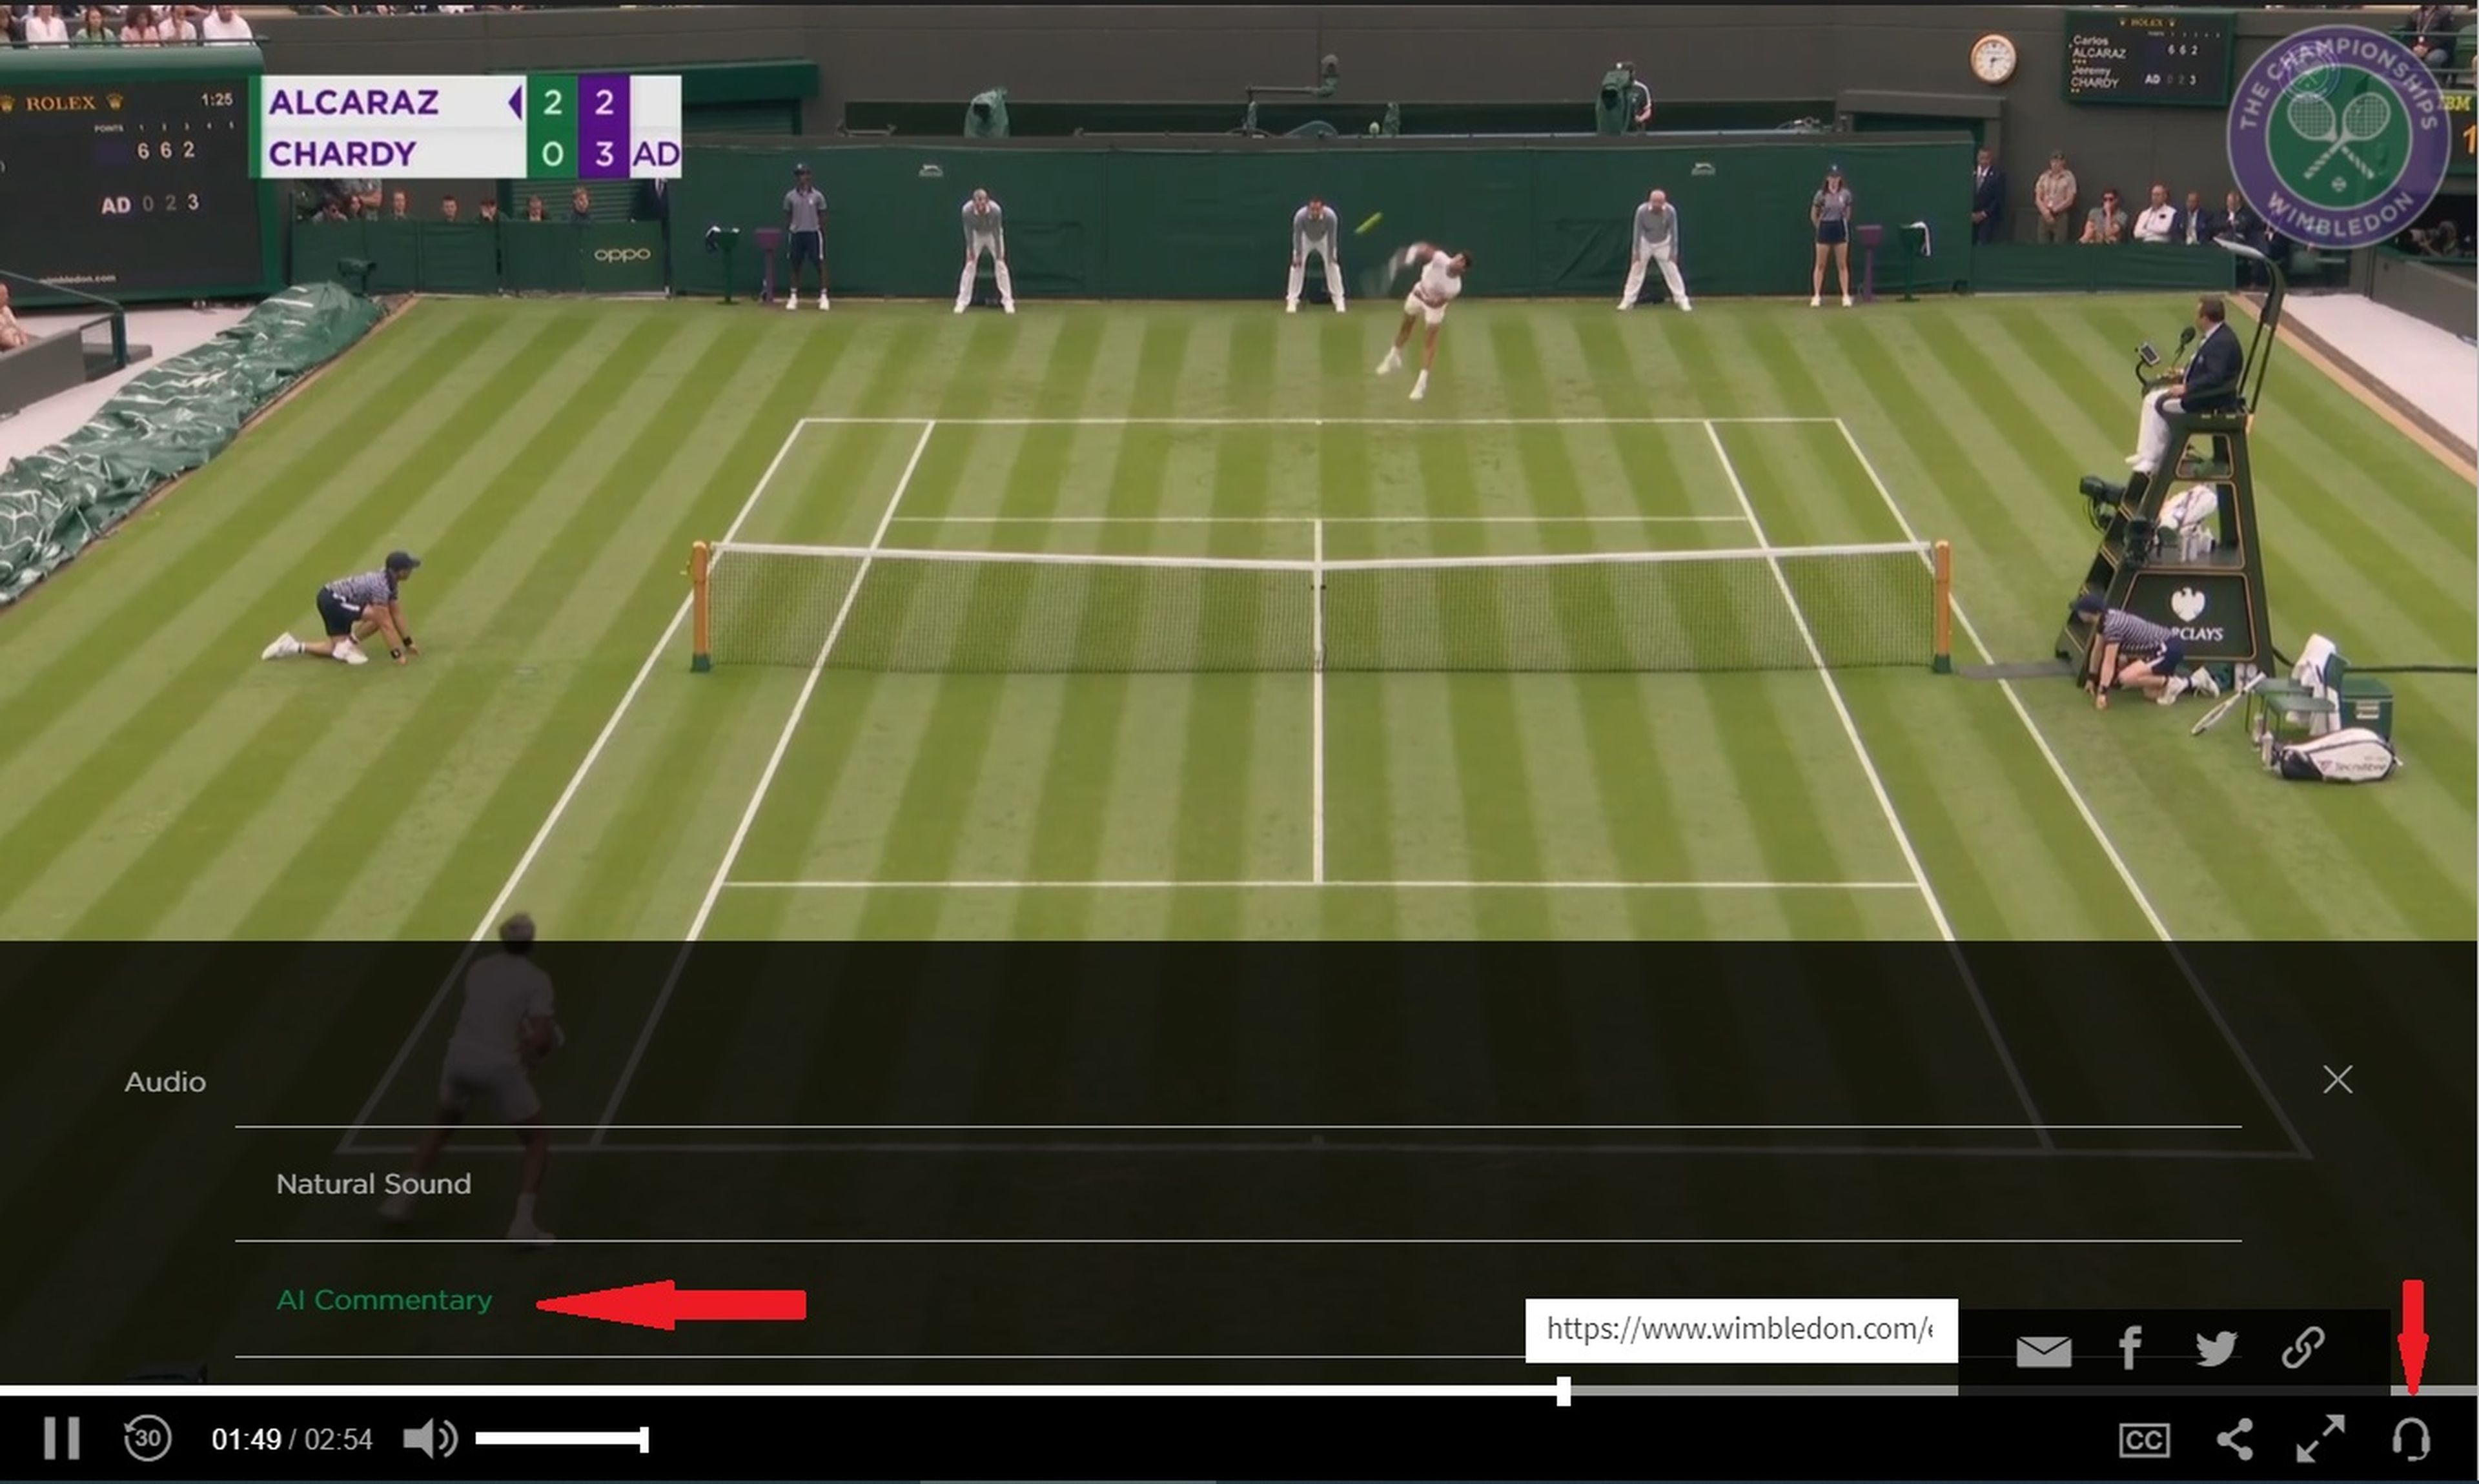 Este año, Wimbledon tiene una inteligencia artificial como comentarista, y ya puedes probarla